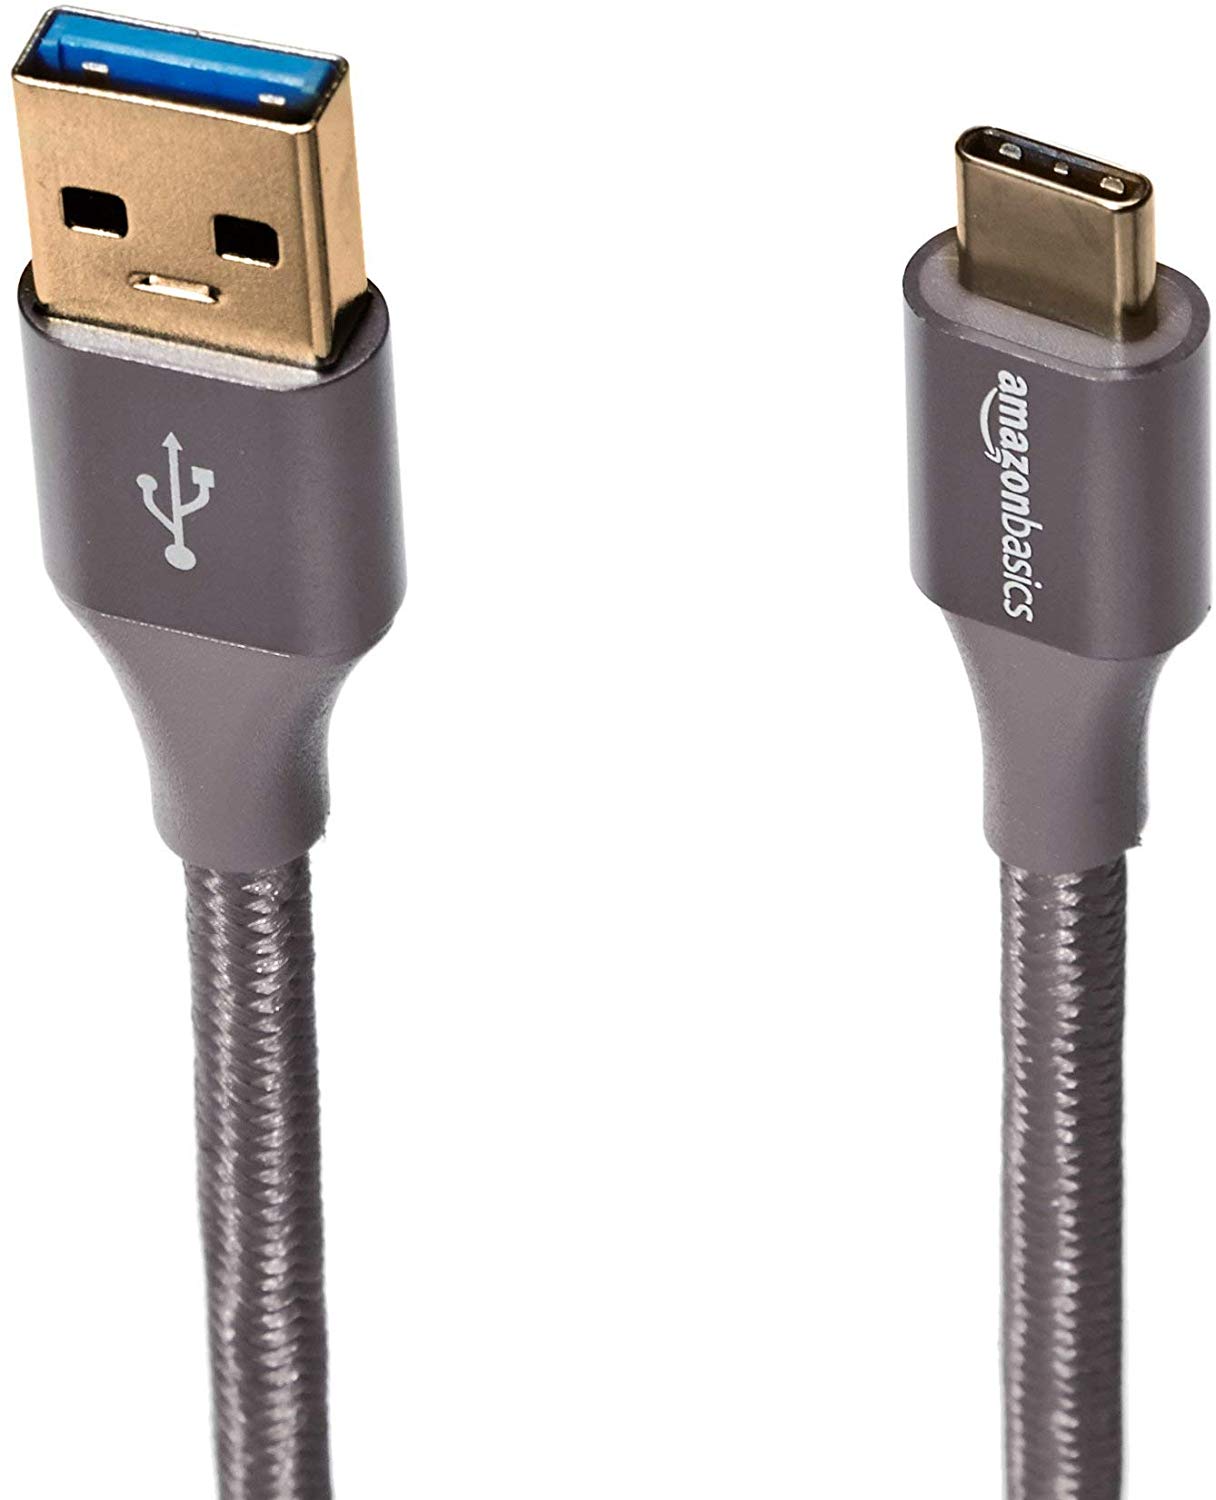 AmazonBasics USB-C braided charging cable